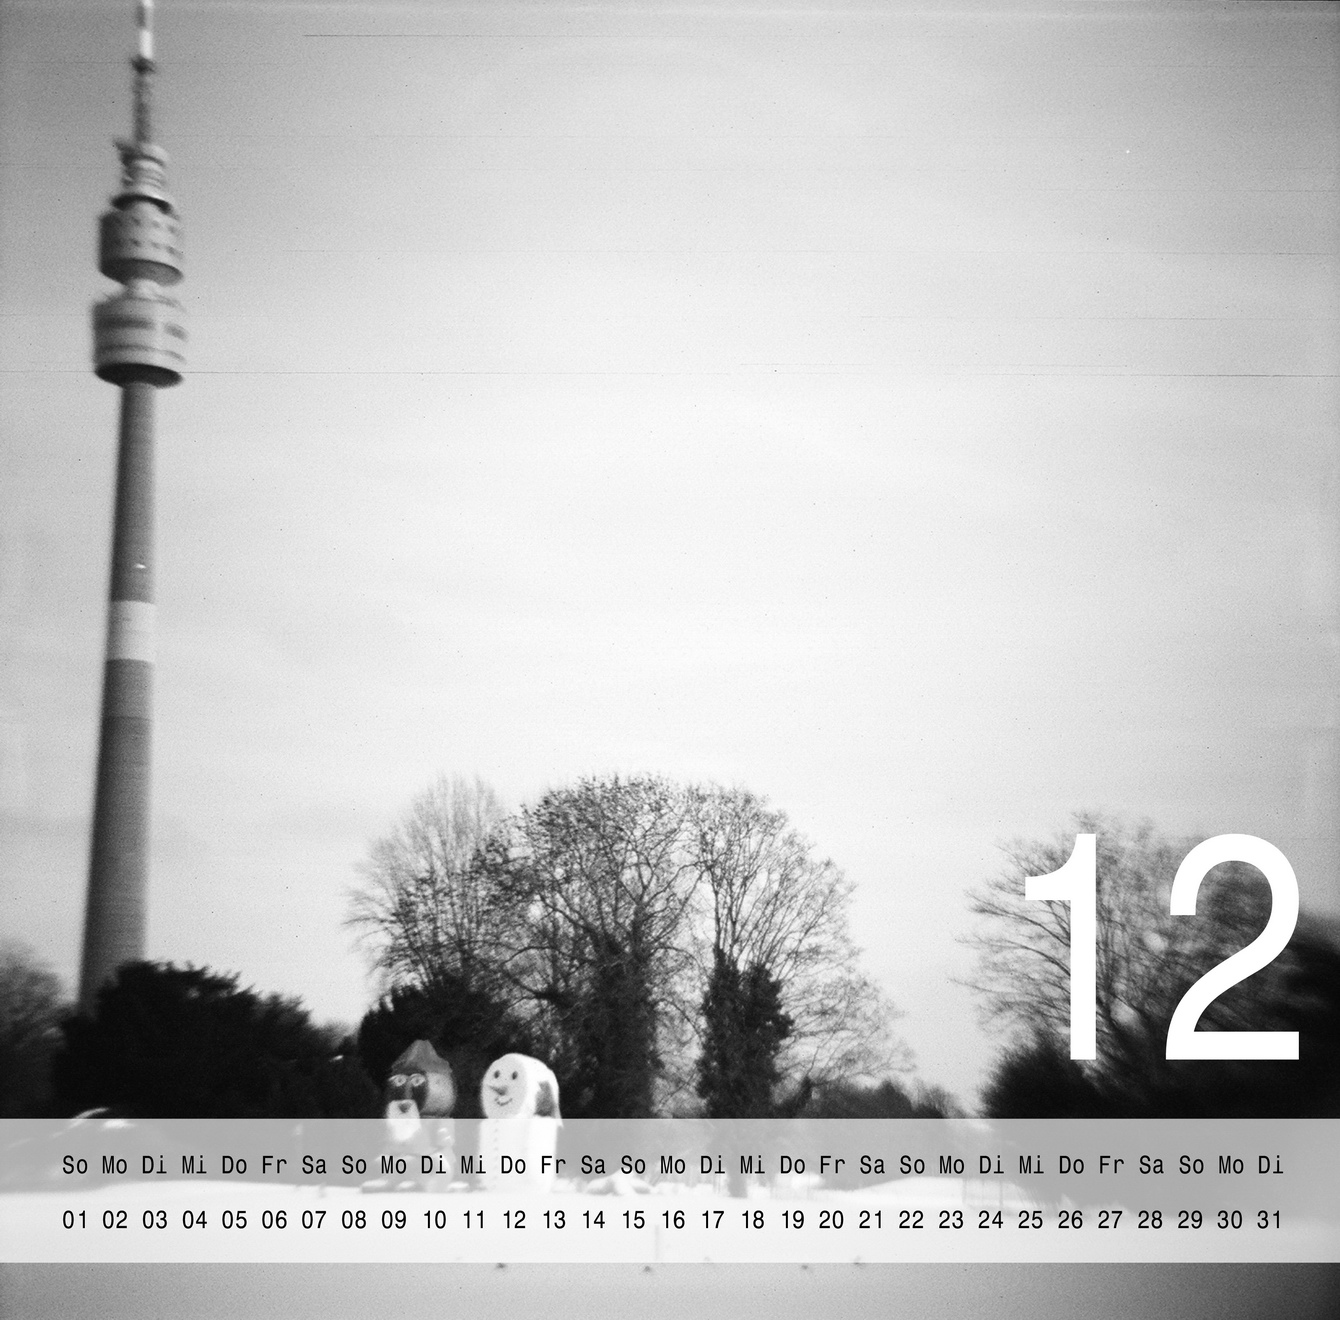 Dortmund-Kalender 2013 - Freebie von "Fee ist mein Name"